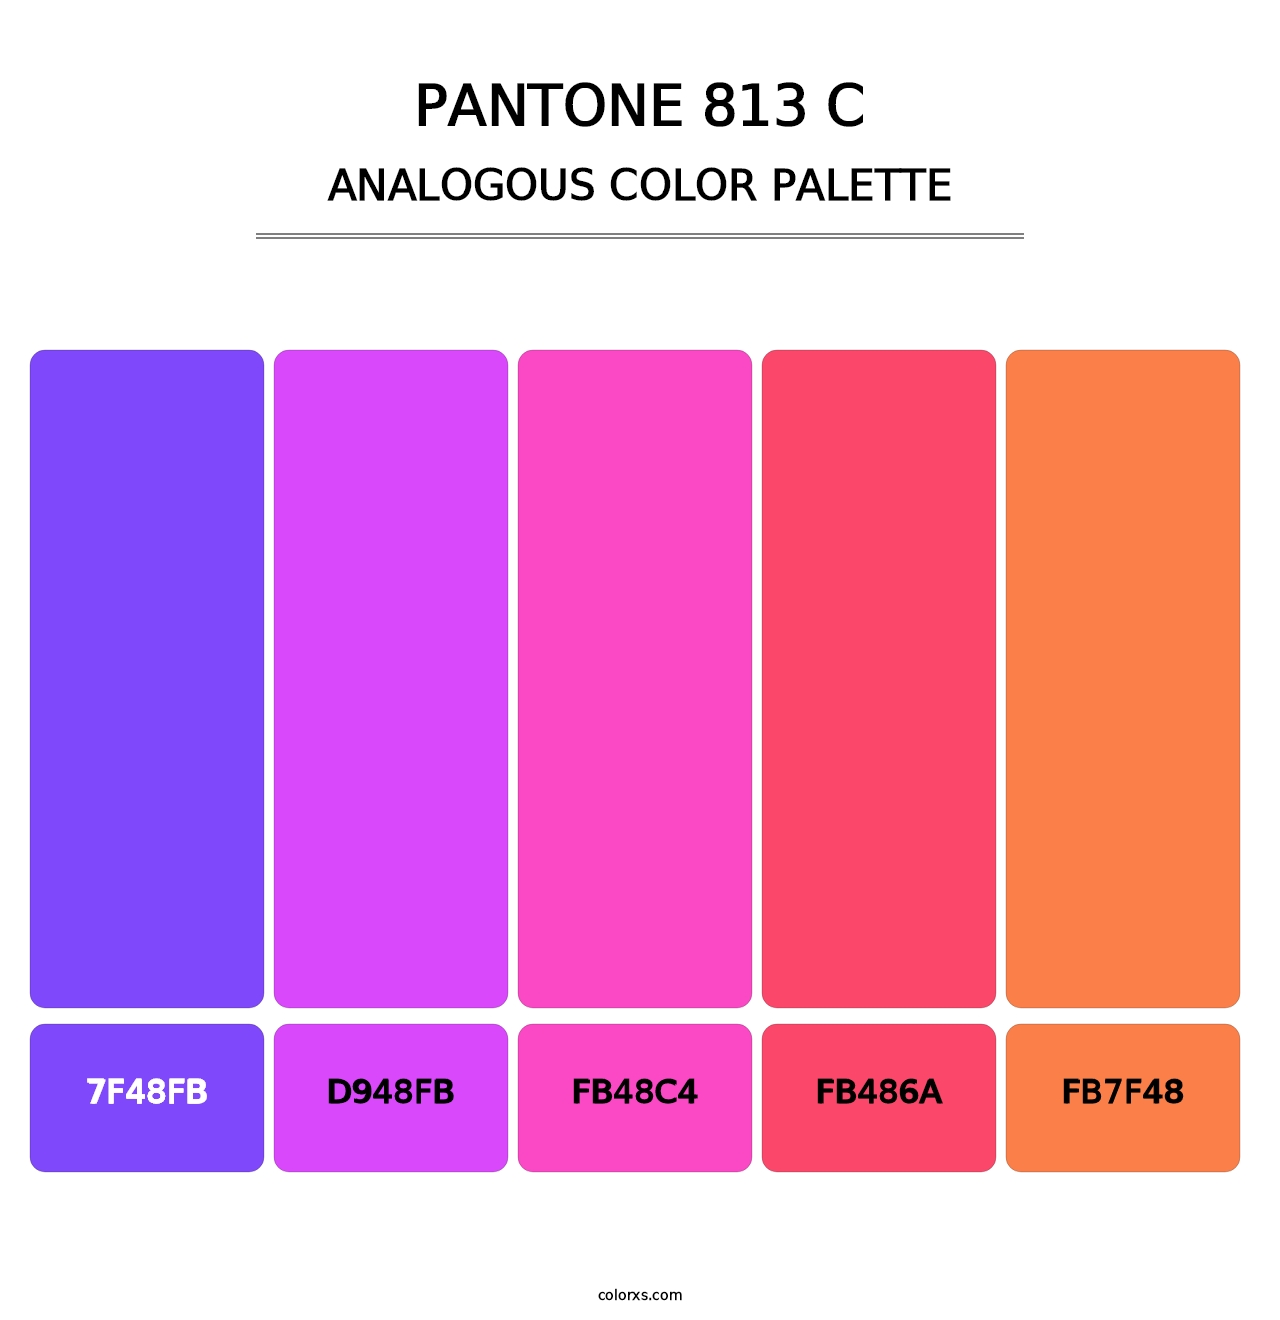 PANTONE 813 C - Analogous Color Palette